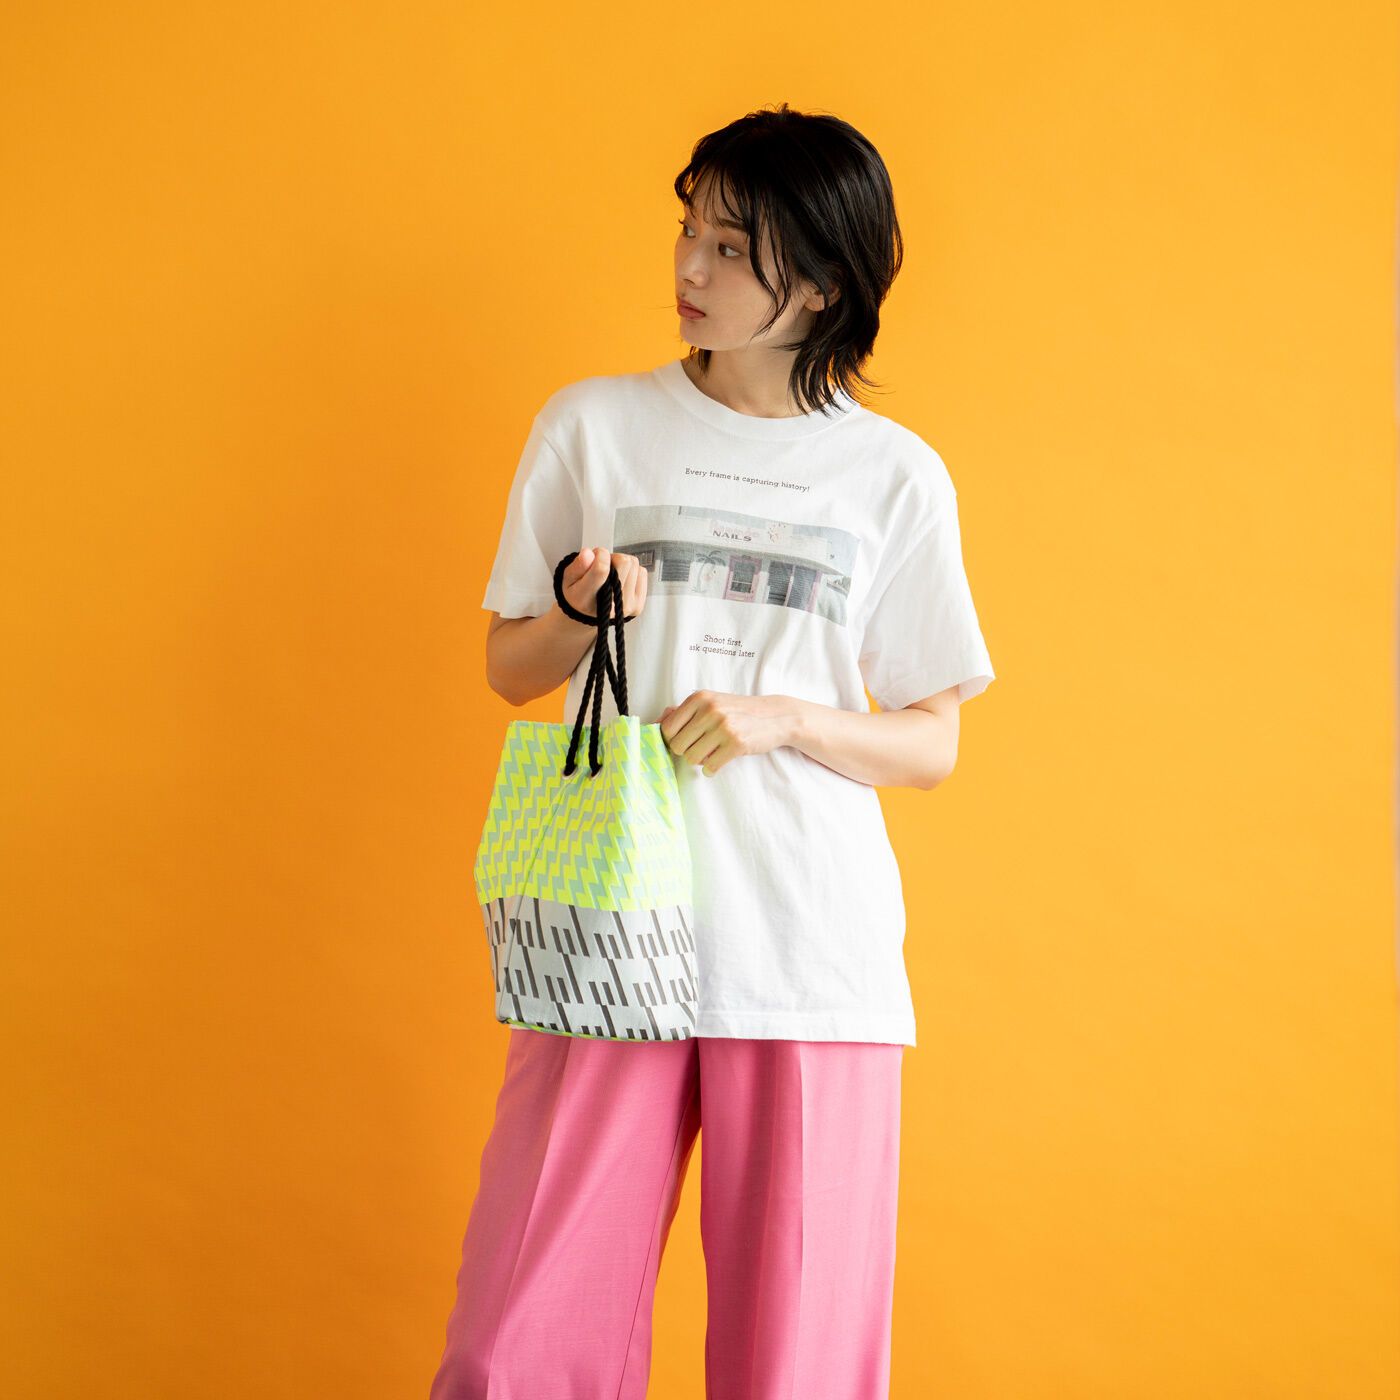 ＆Stories|テキスタイルデザイナーと作った 播州織のダズリングバッグ〈ナイトネオン〉|これひとつで一気におしゃれ見え。鮮やかな蛍光カラーは持つだけで気分も上がります。